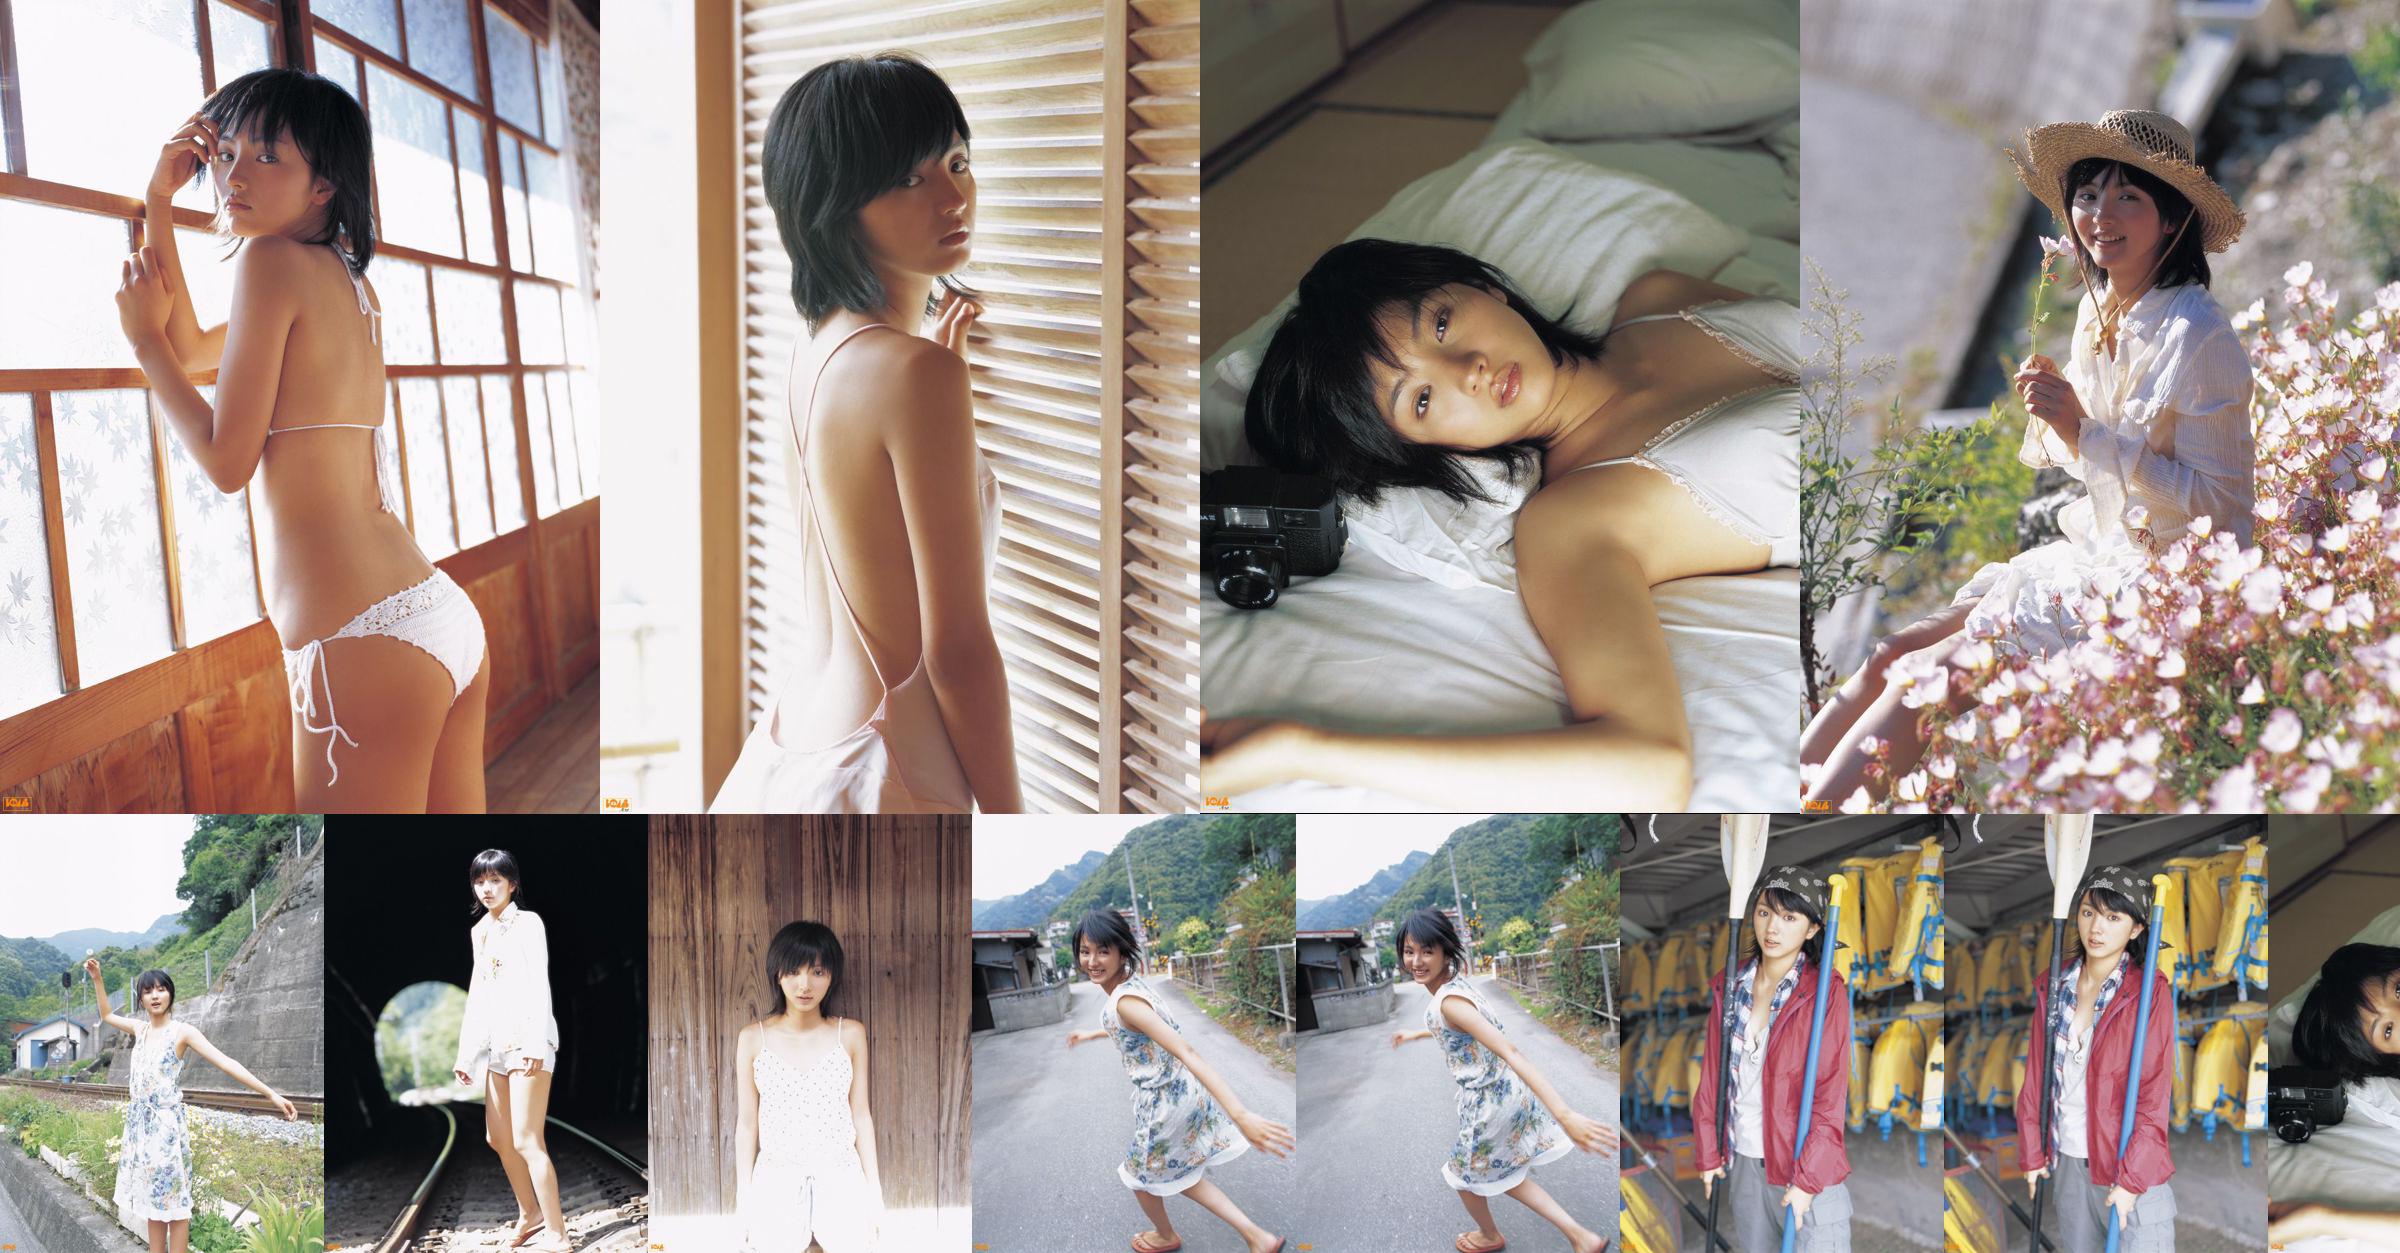 [Bomb.TV] Tháng 8 năm 2005 Hikari Mitsushima Hikari Mitsushima / Manshima Hikari No.09b657 Trang 1